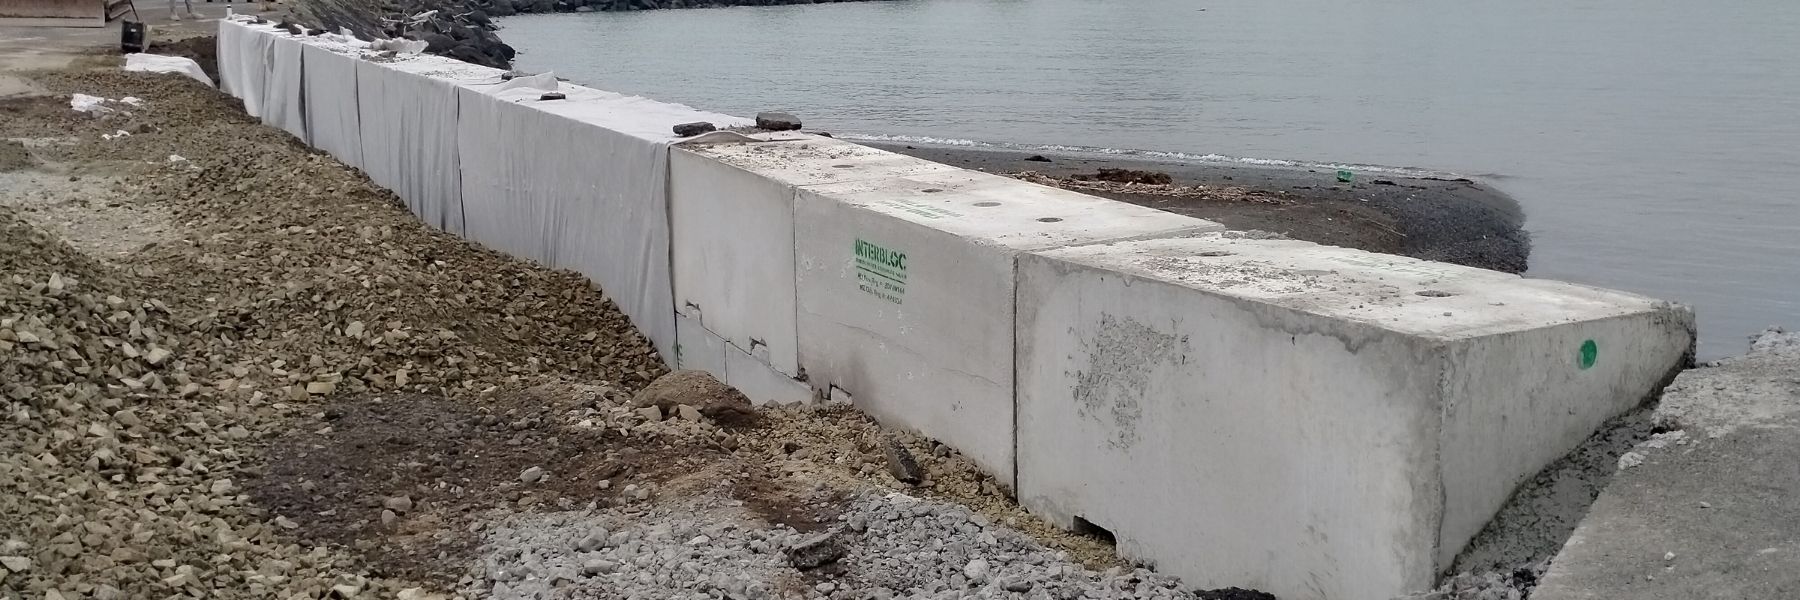 Interbloc concrete block seawalls